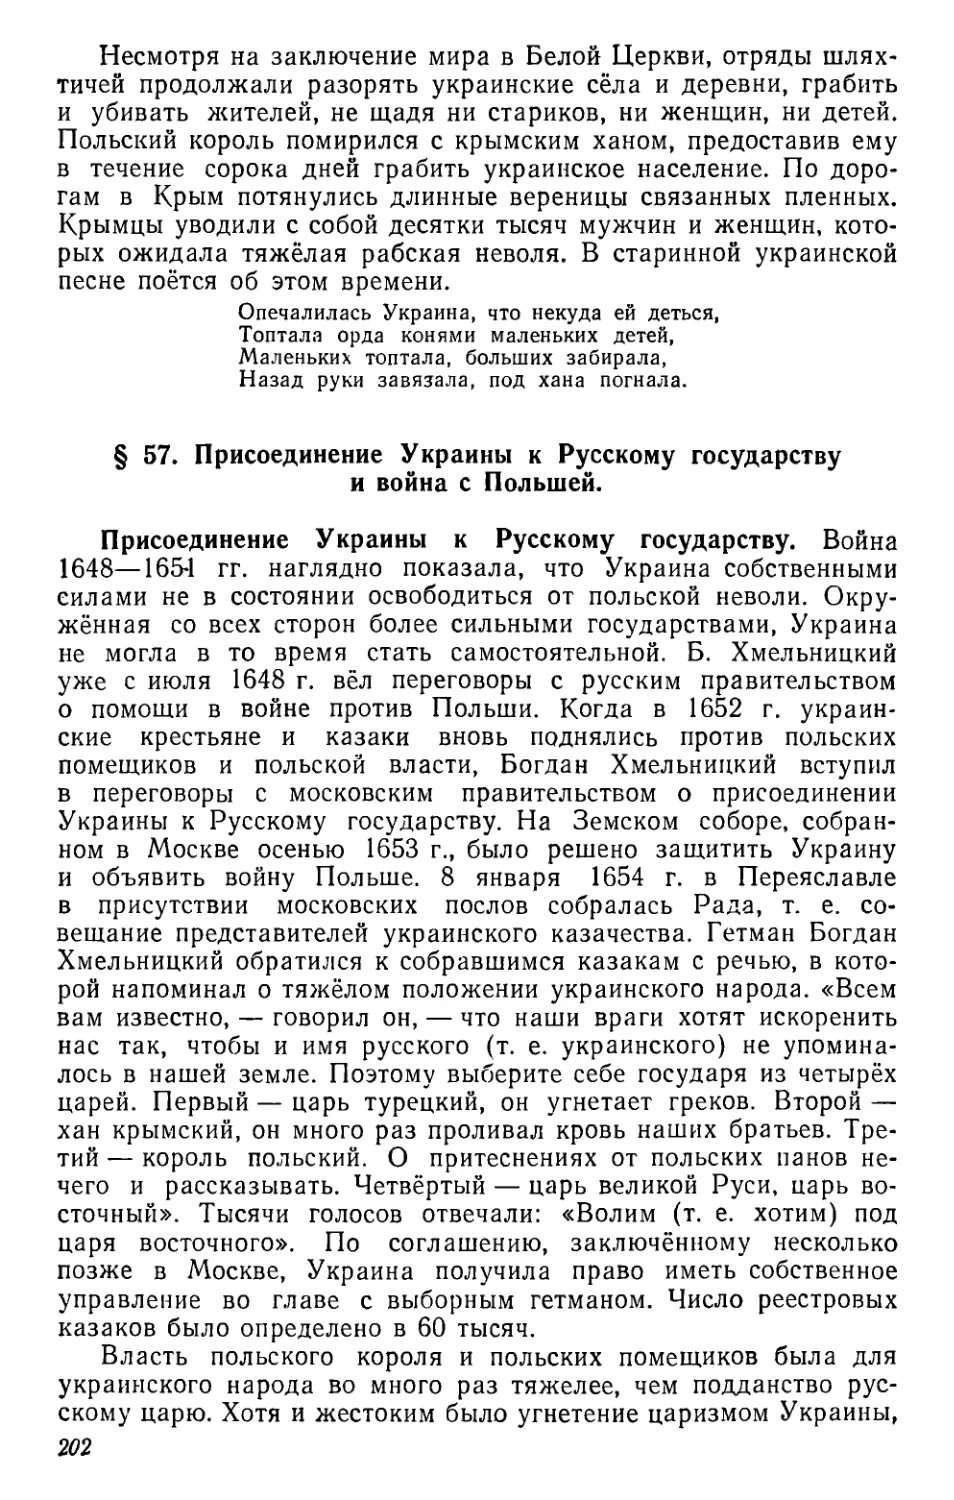 § 57. Присоединение Украины к Русскому государству и война с Польшей